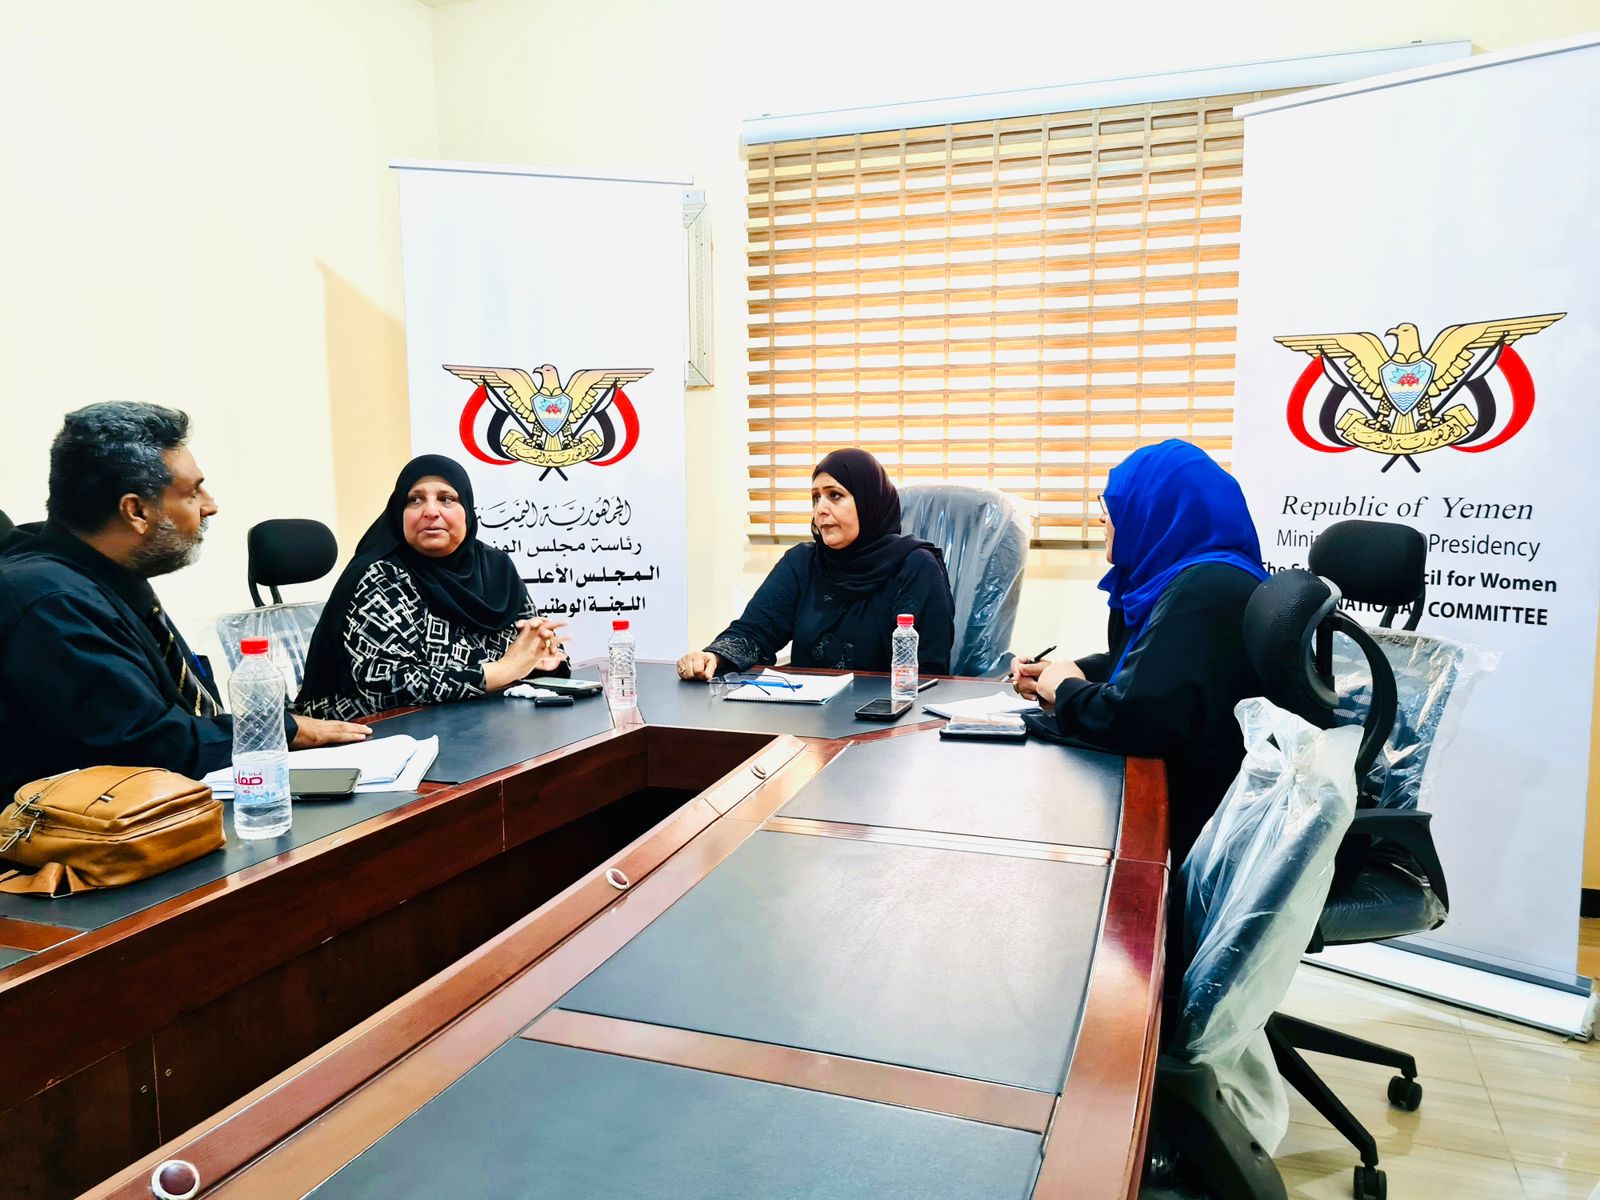 لقاء بعدن يناقش آليات العمل المشترك بين اللجنة الوطنية للمرأة واتحاد نساء اليمن